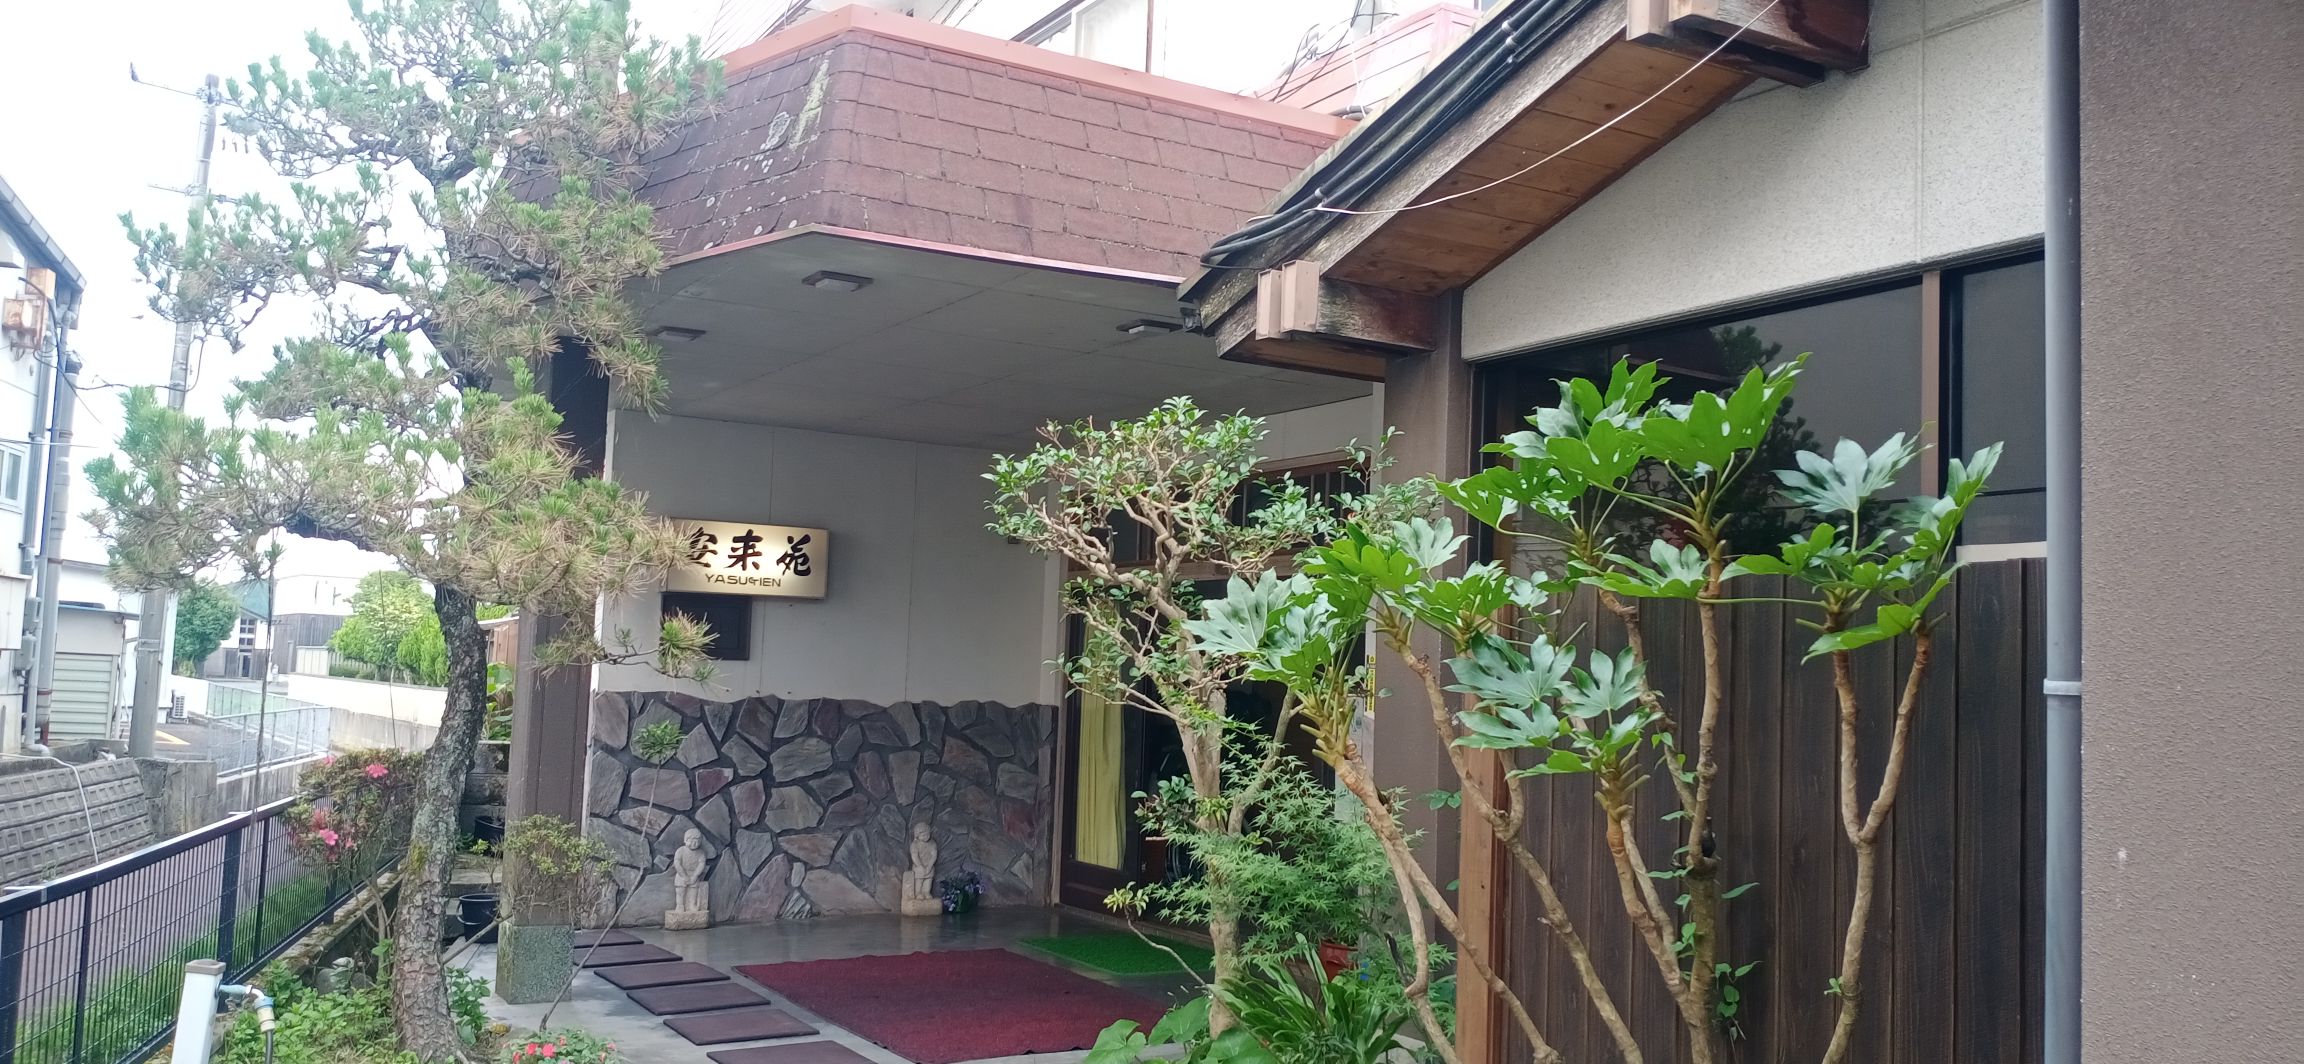 房子是很有日本特色的宅子，温泉随便泡。        屋内里面的东西都显旧，如果物品摆设能简约些，会